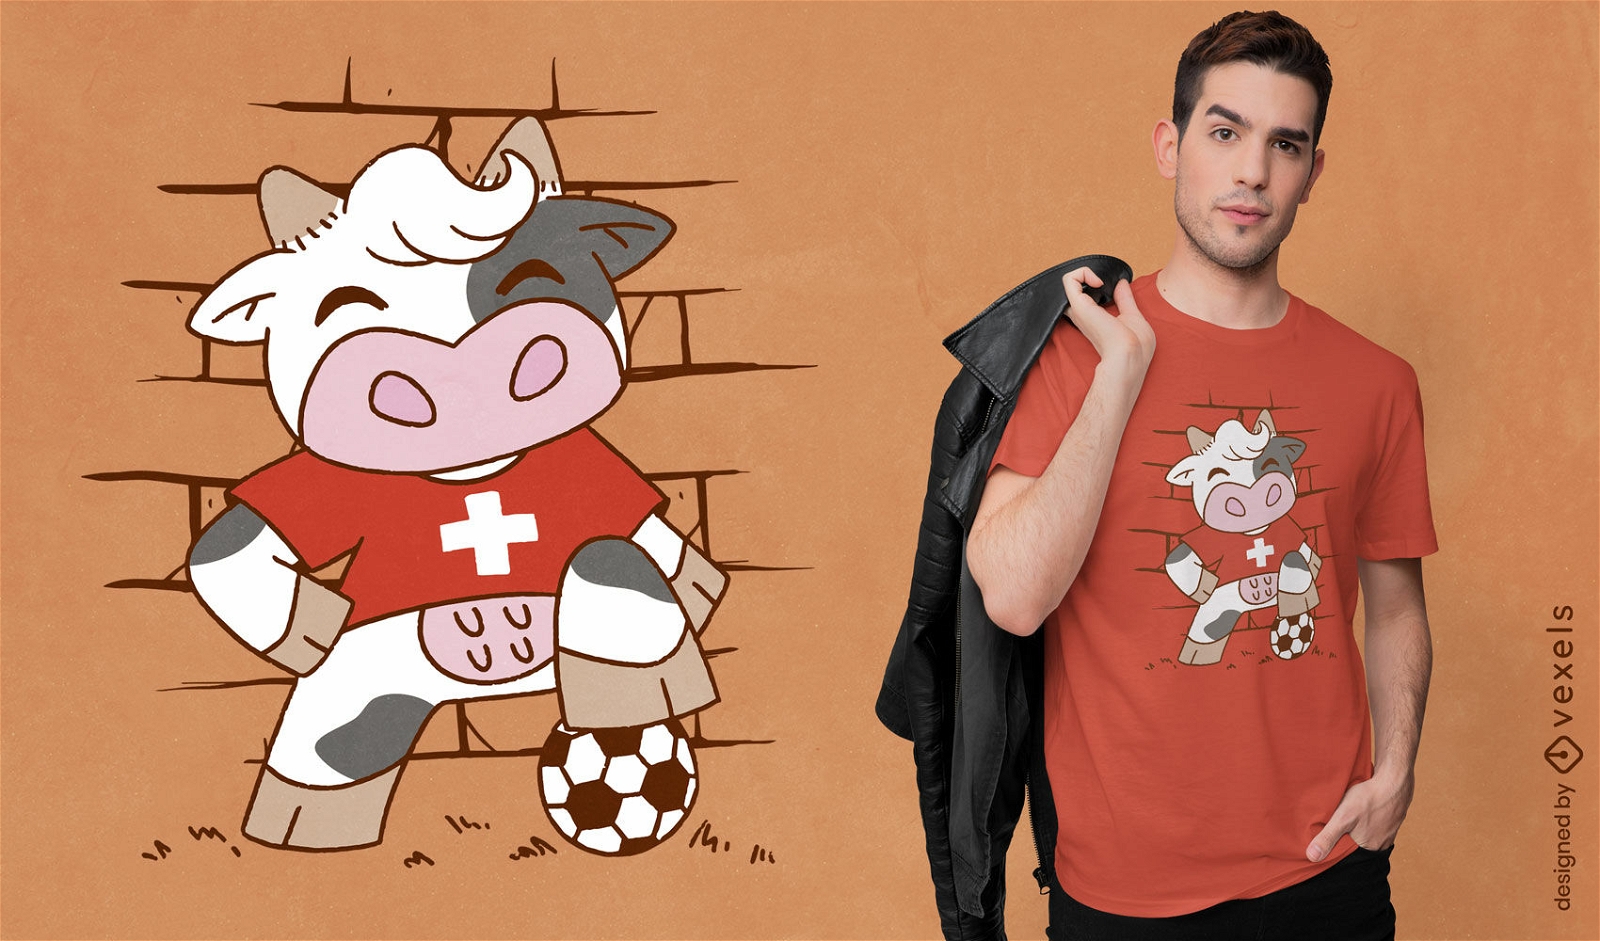 Swiss soccer cow t-shirt design